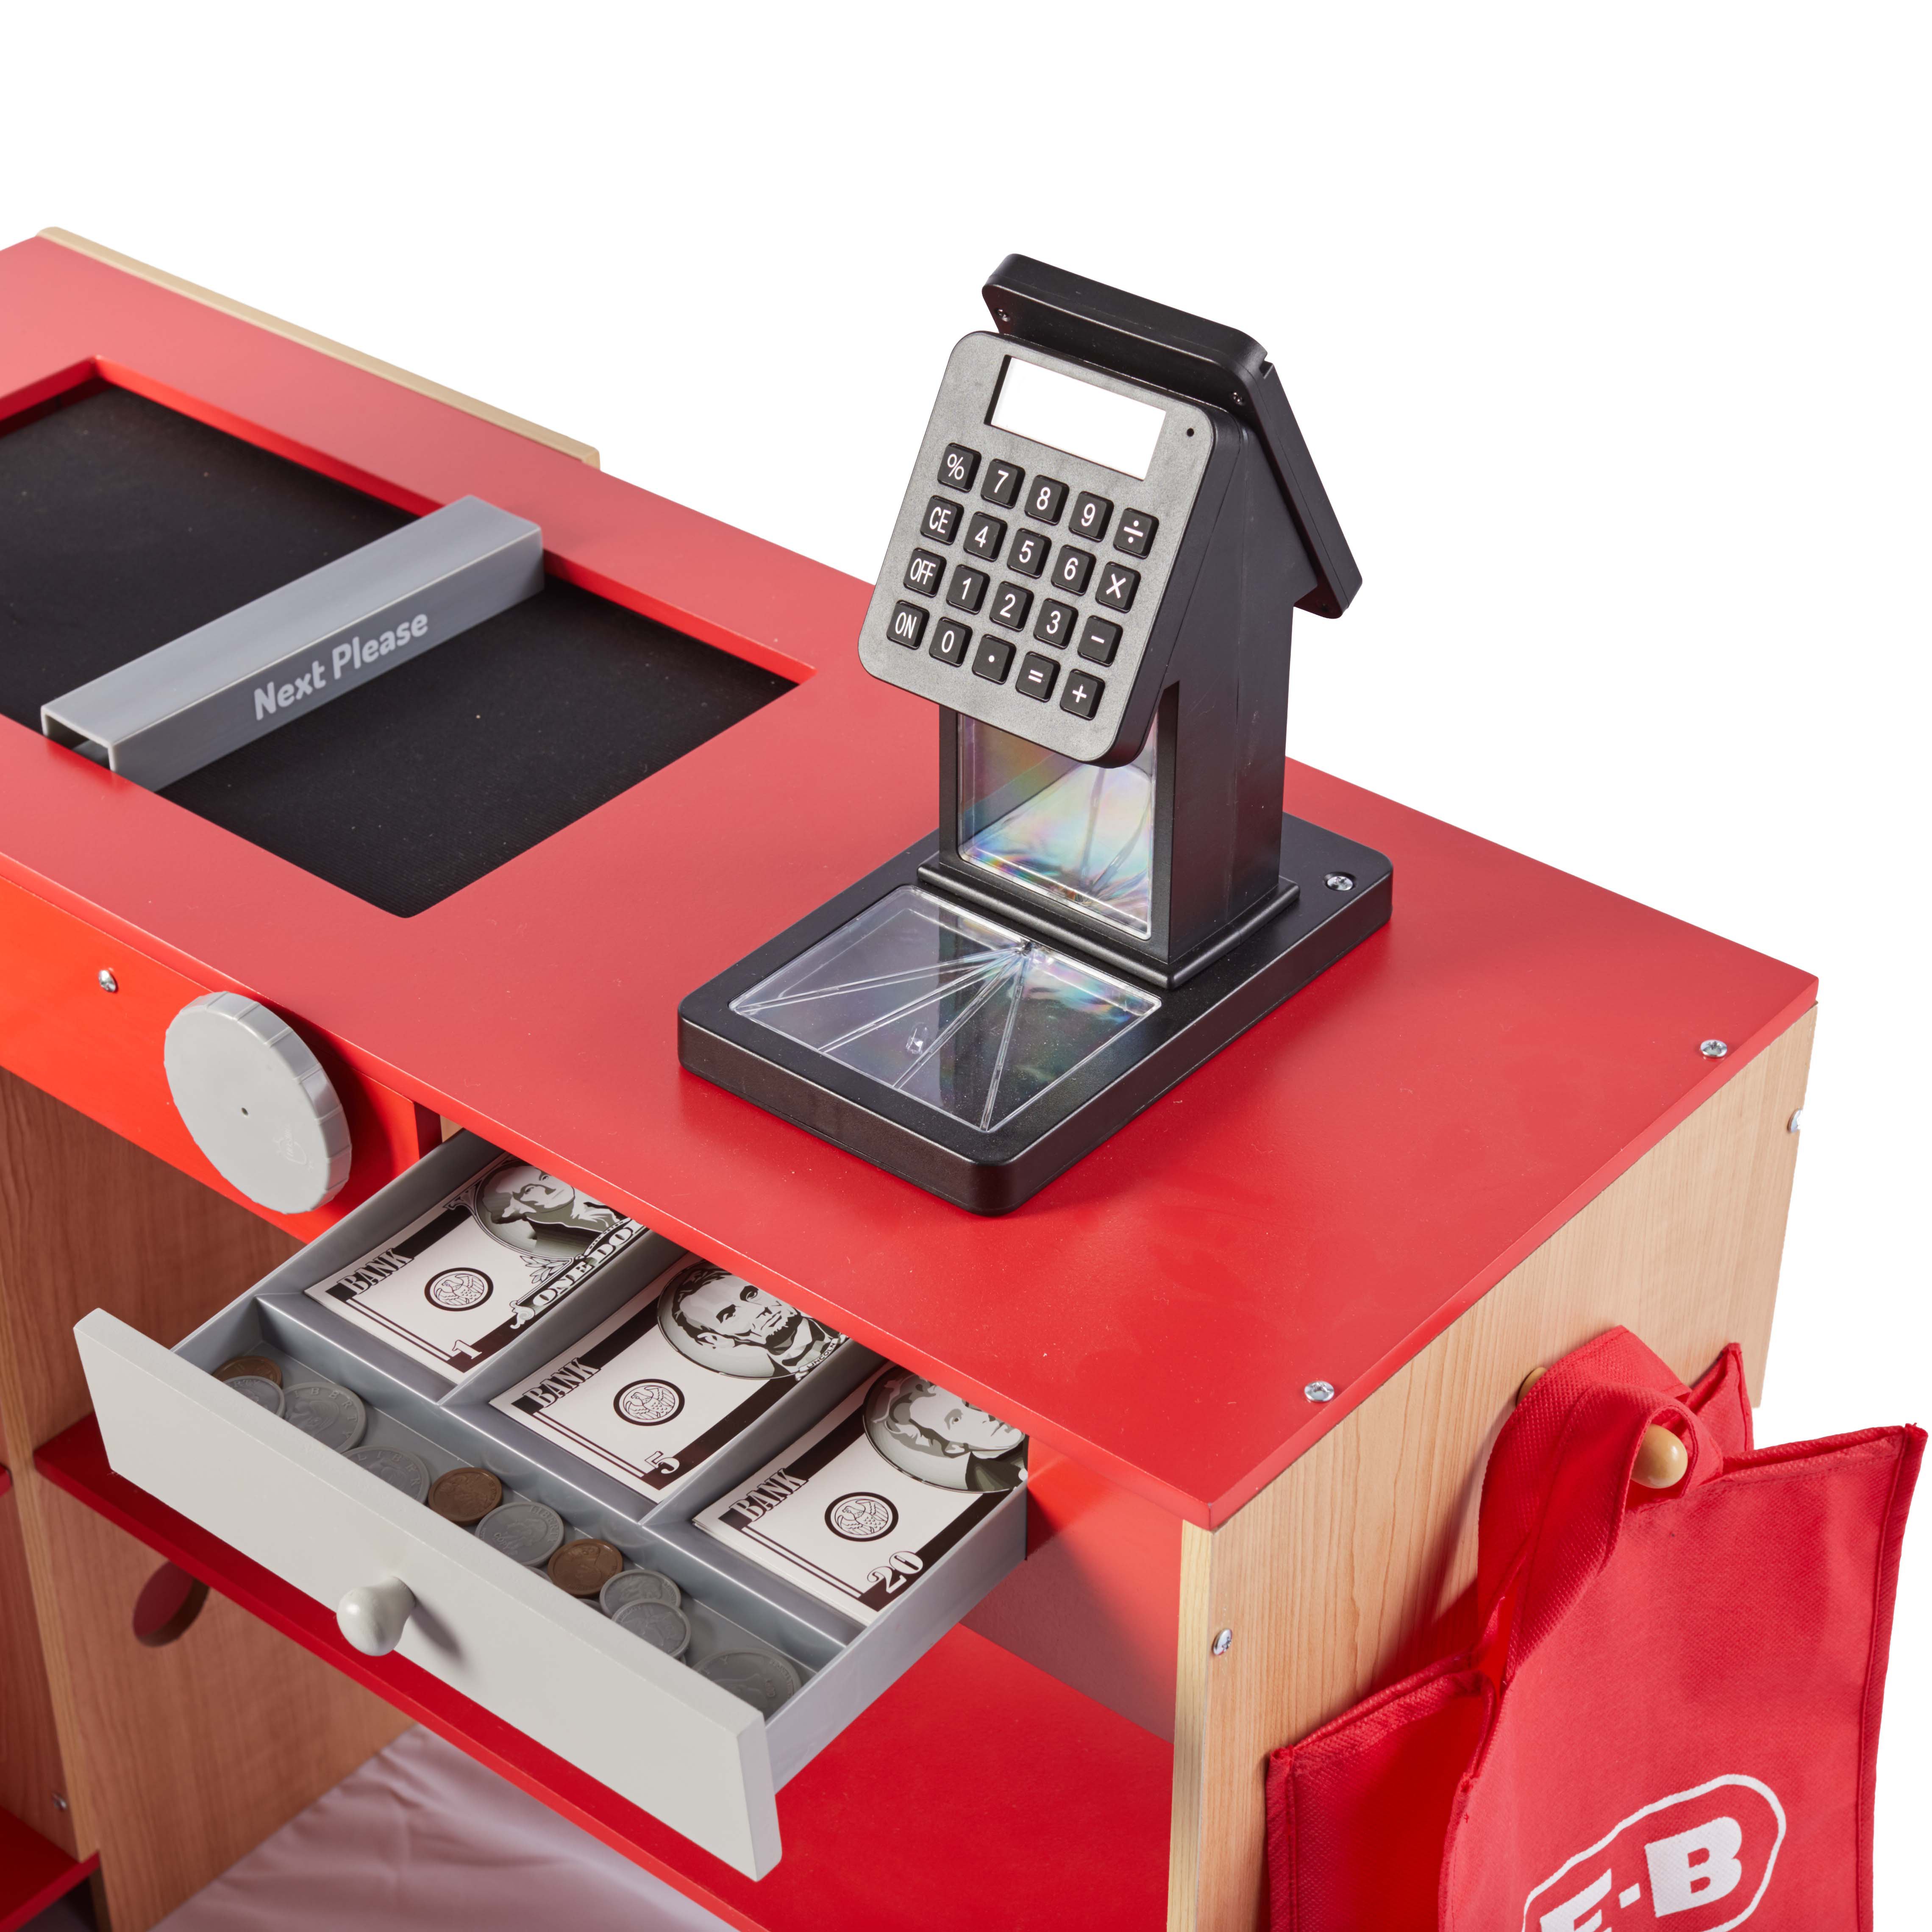 Unboxing Juguete Caja registradora digital de juguete 